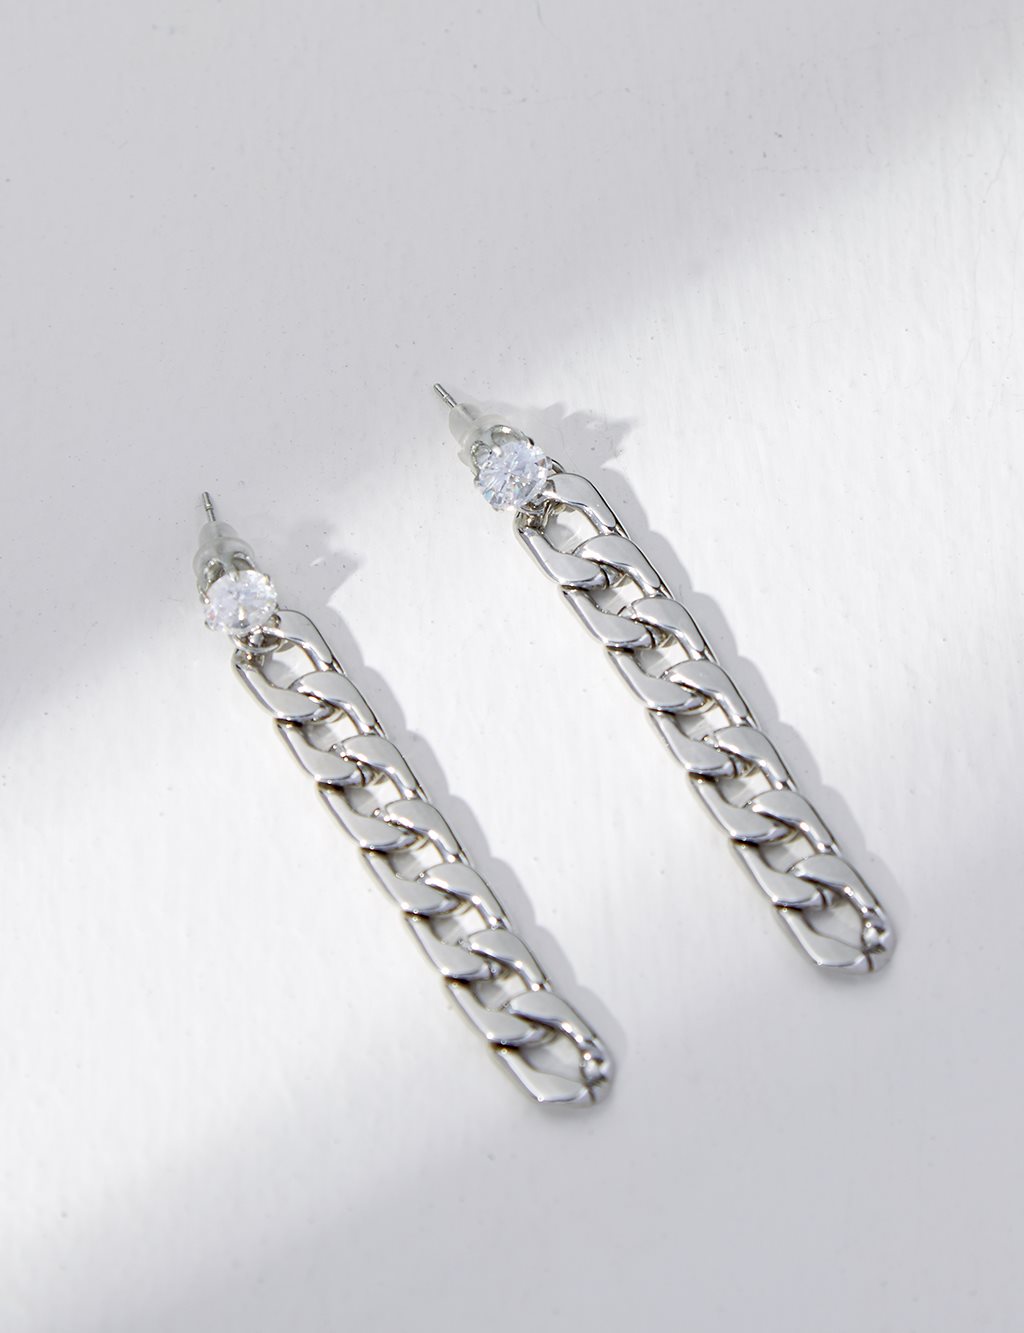 Chain Earrings B21 KP05 Nickel